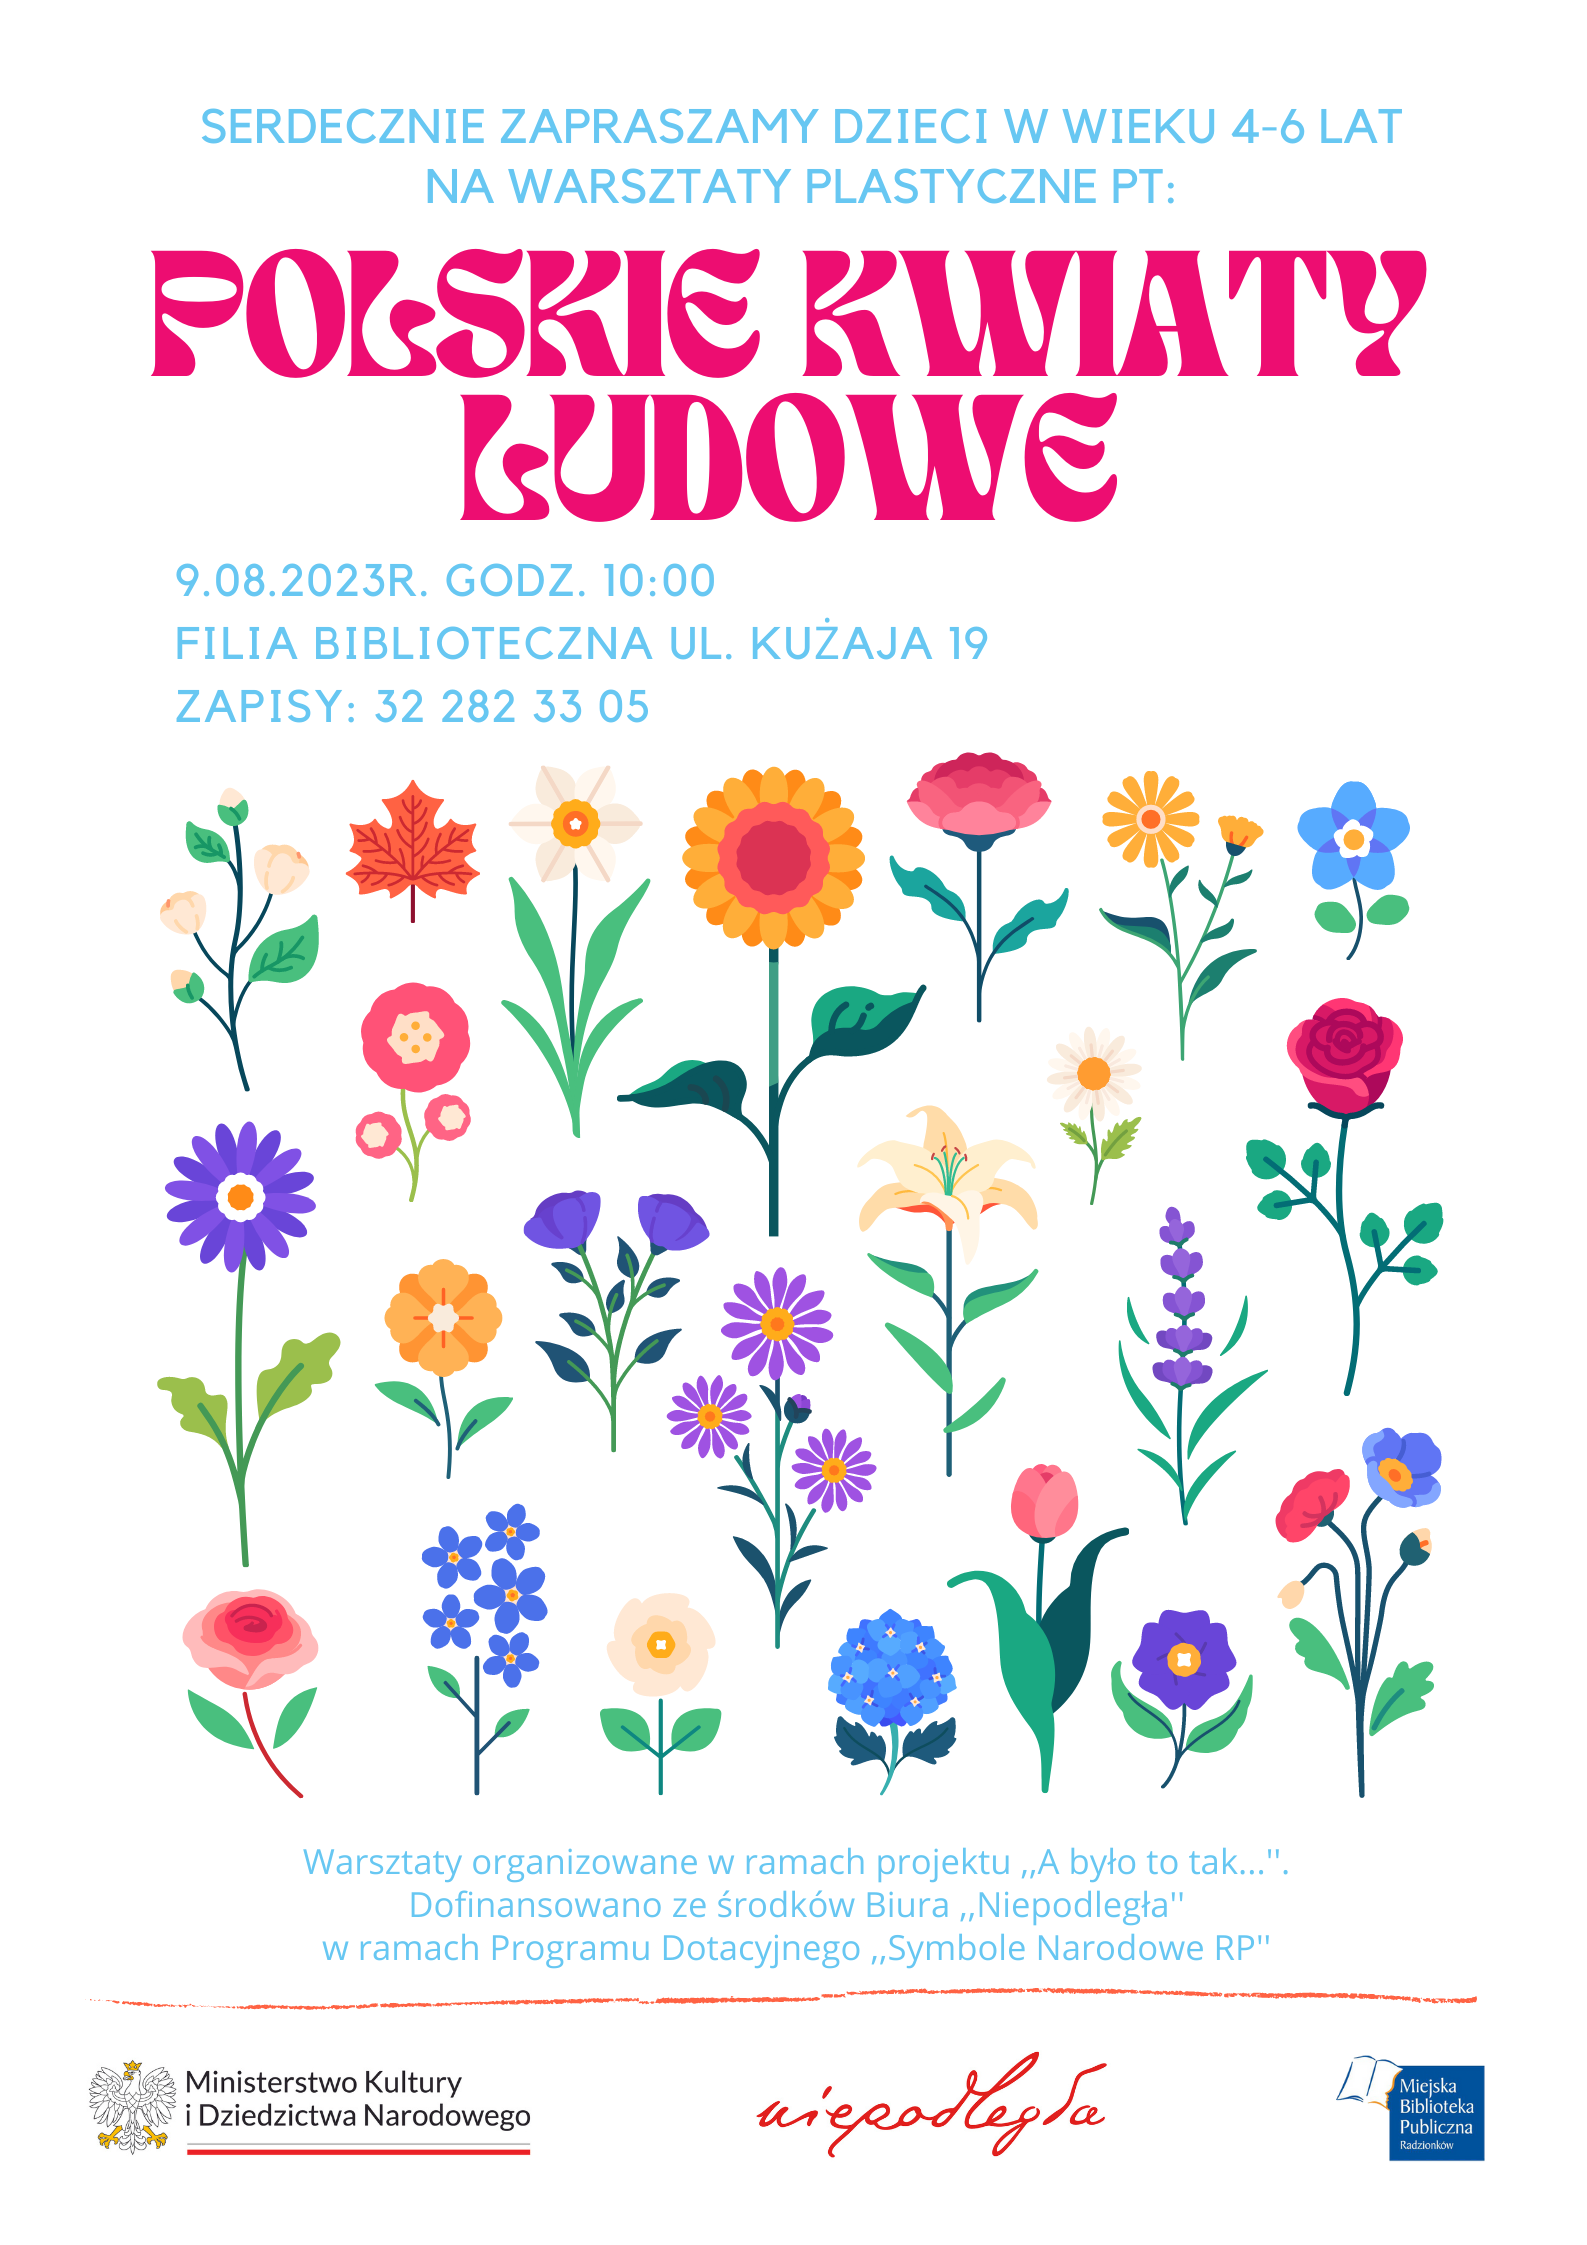 Zapraszamy na warsztaty "Polskie kwiaty ludowe" dnia 9.08.2023 roku na godzinę 10.00 do Filii Bibliotecznej (ul.Kużaja 19).